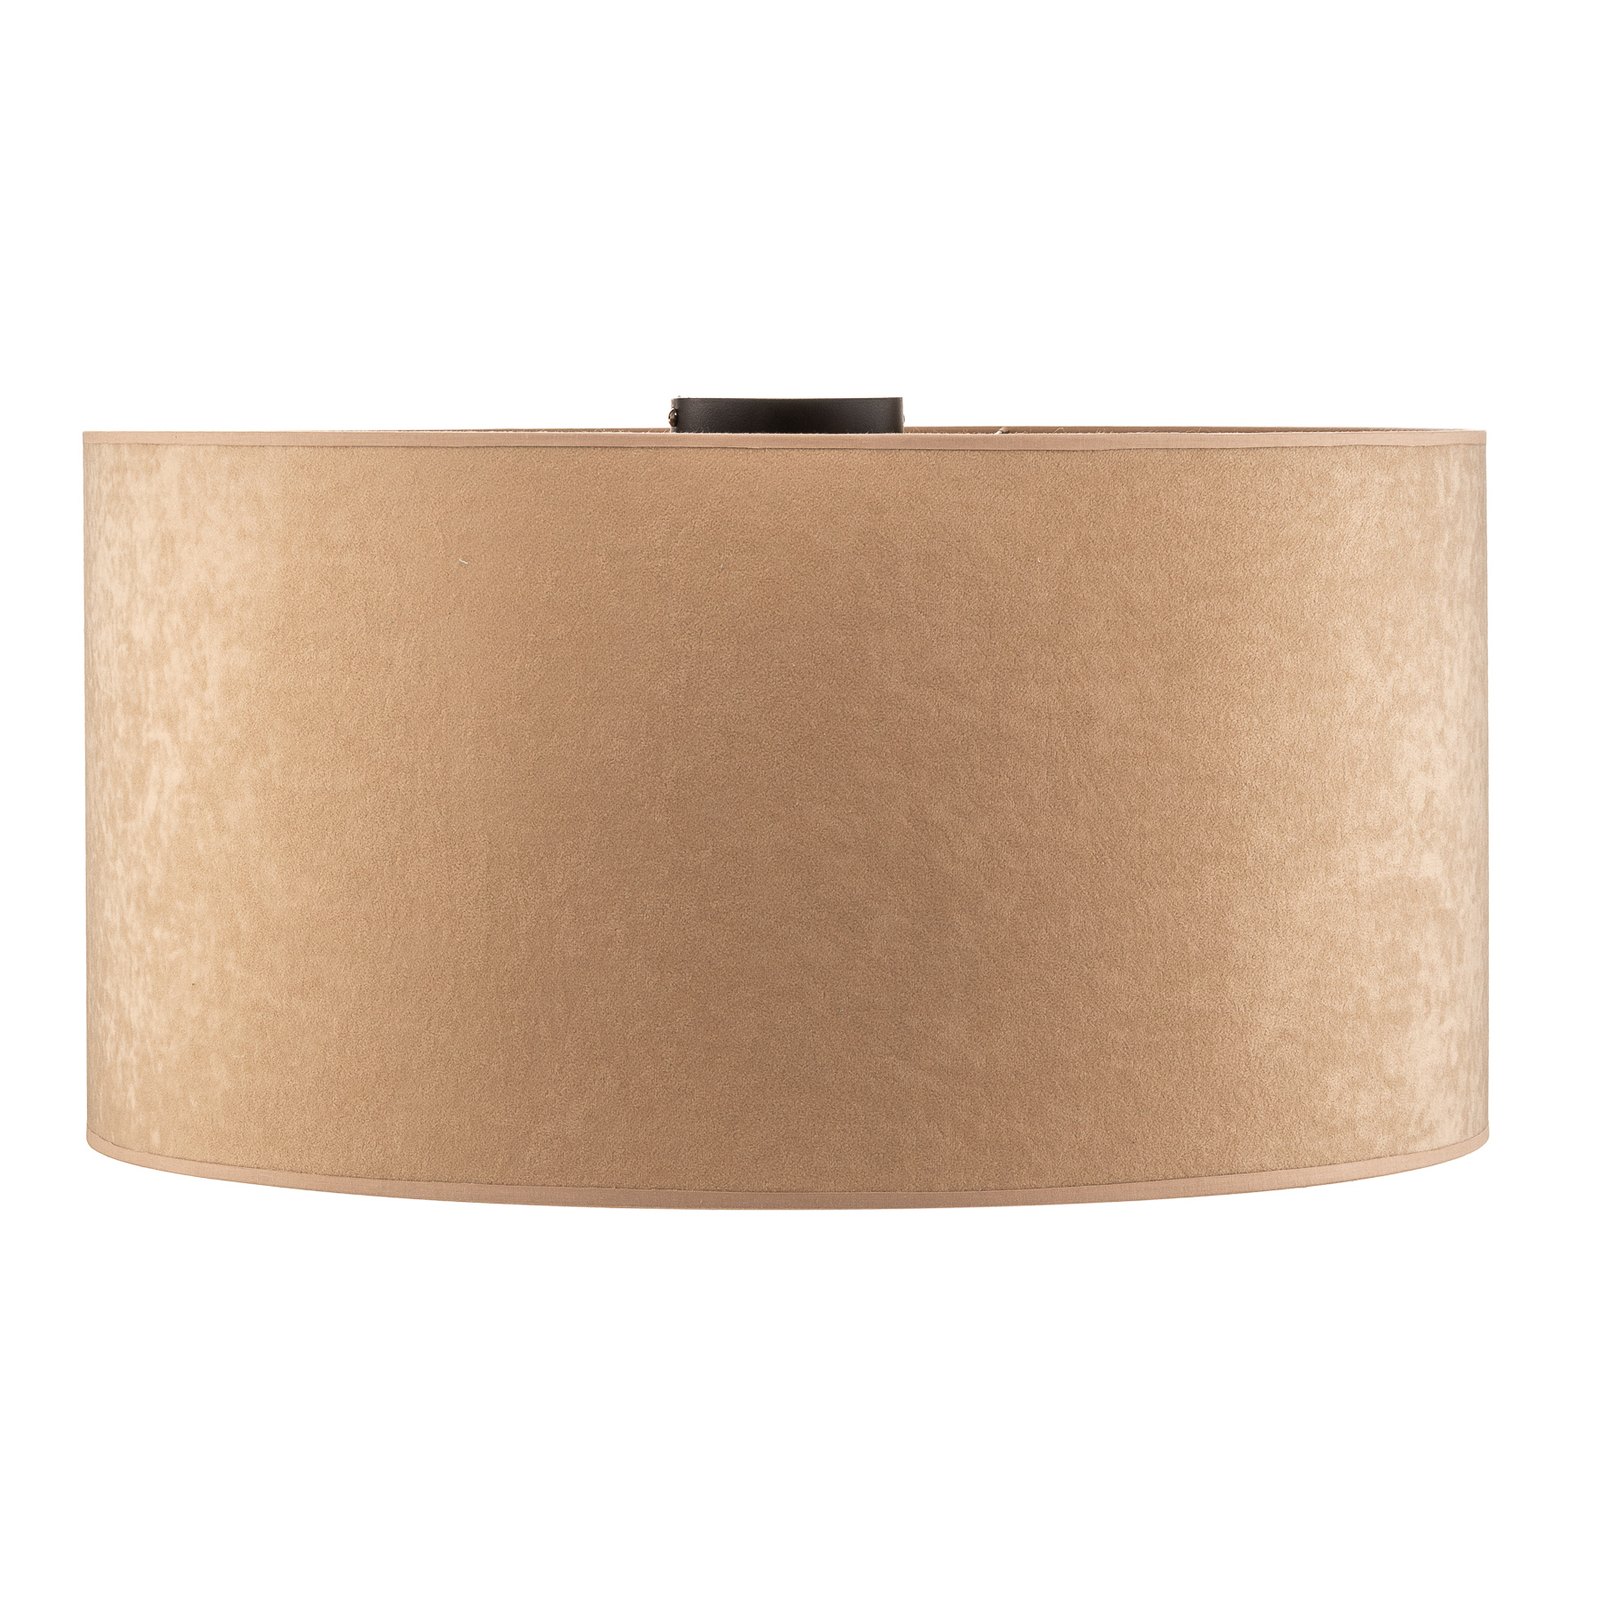 Golden Roller ceiling lamp Ø 60 cm beige/gold